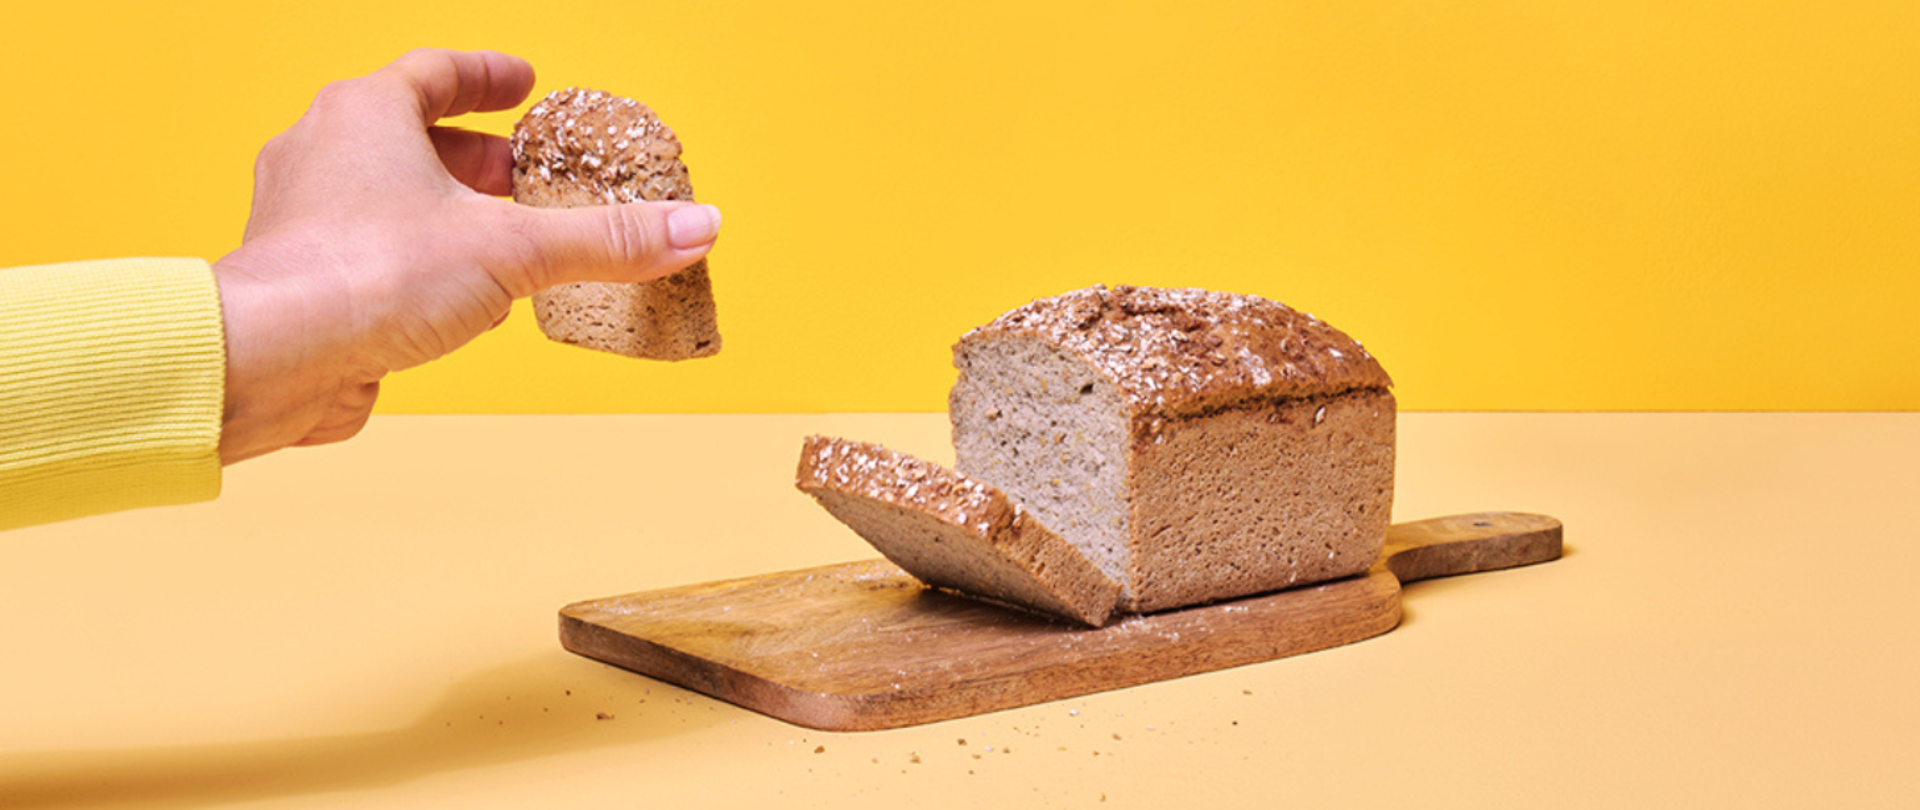 Na fotografii widoczna dłoń trzymająca kromkę chleba, na środku widoczny bochenek chleba na drewnianej desce do krojenia, tło w kolorze żółtym. 